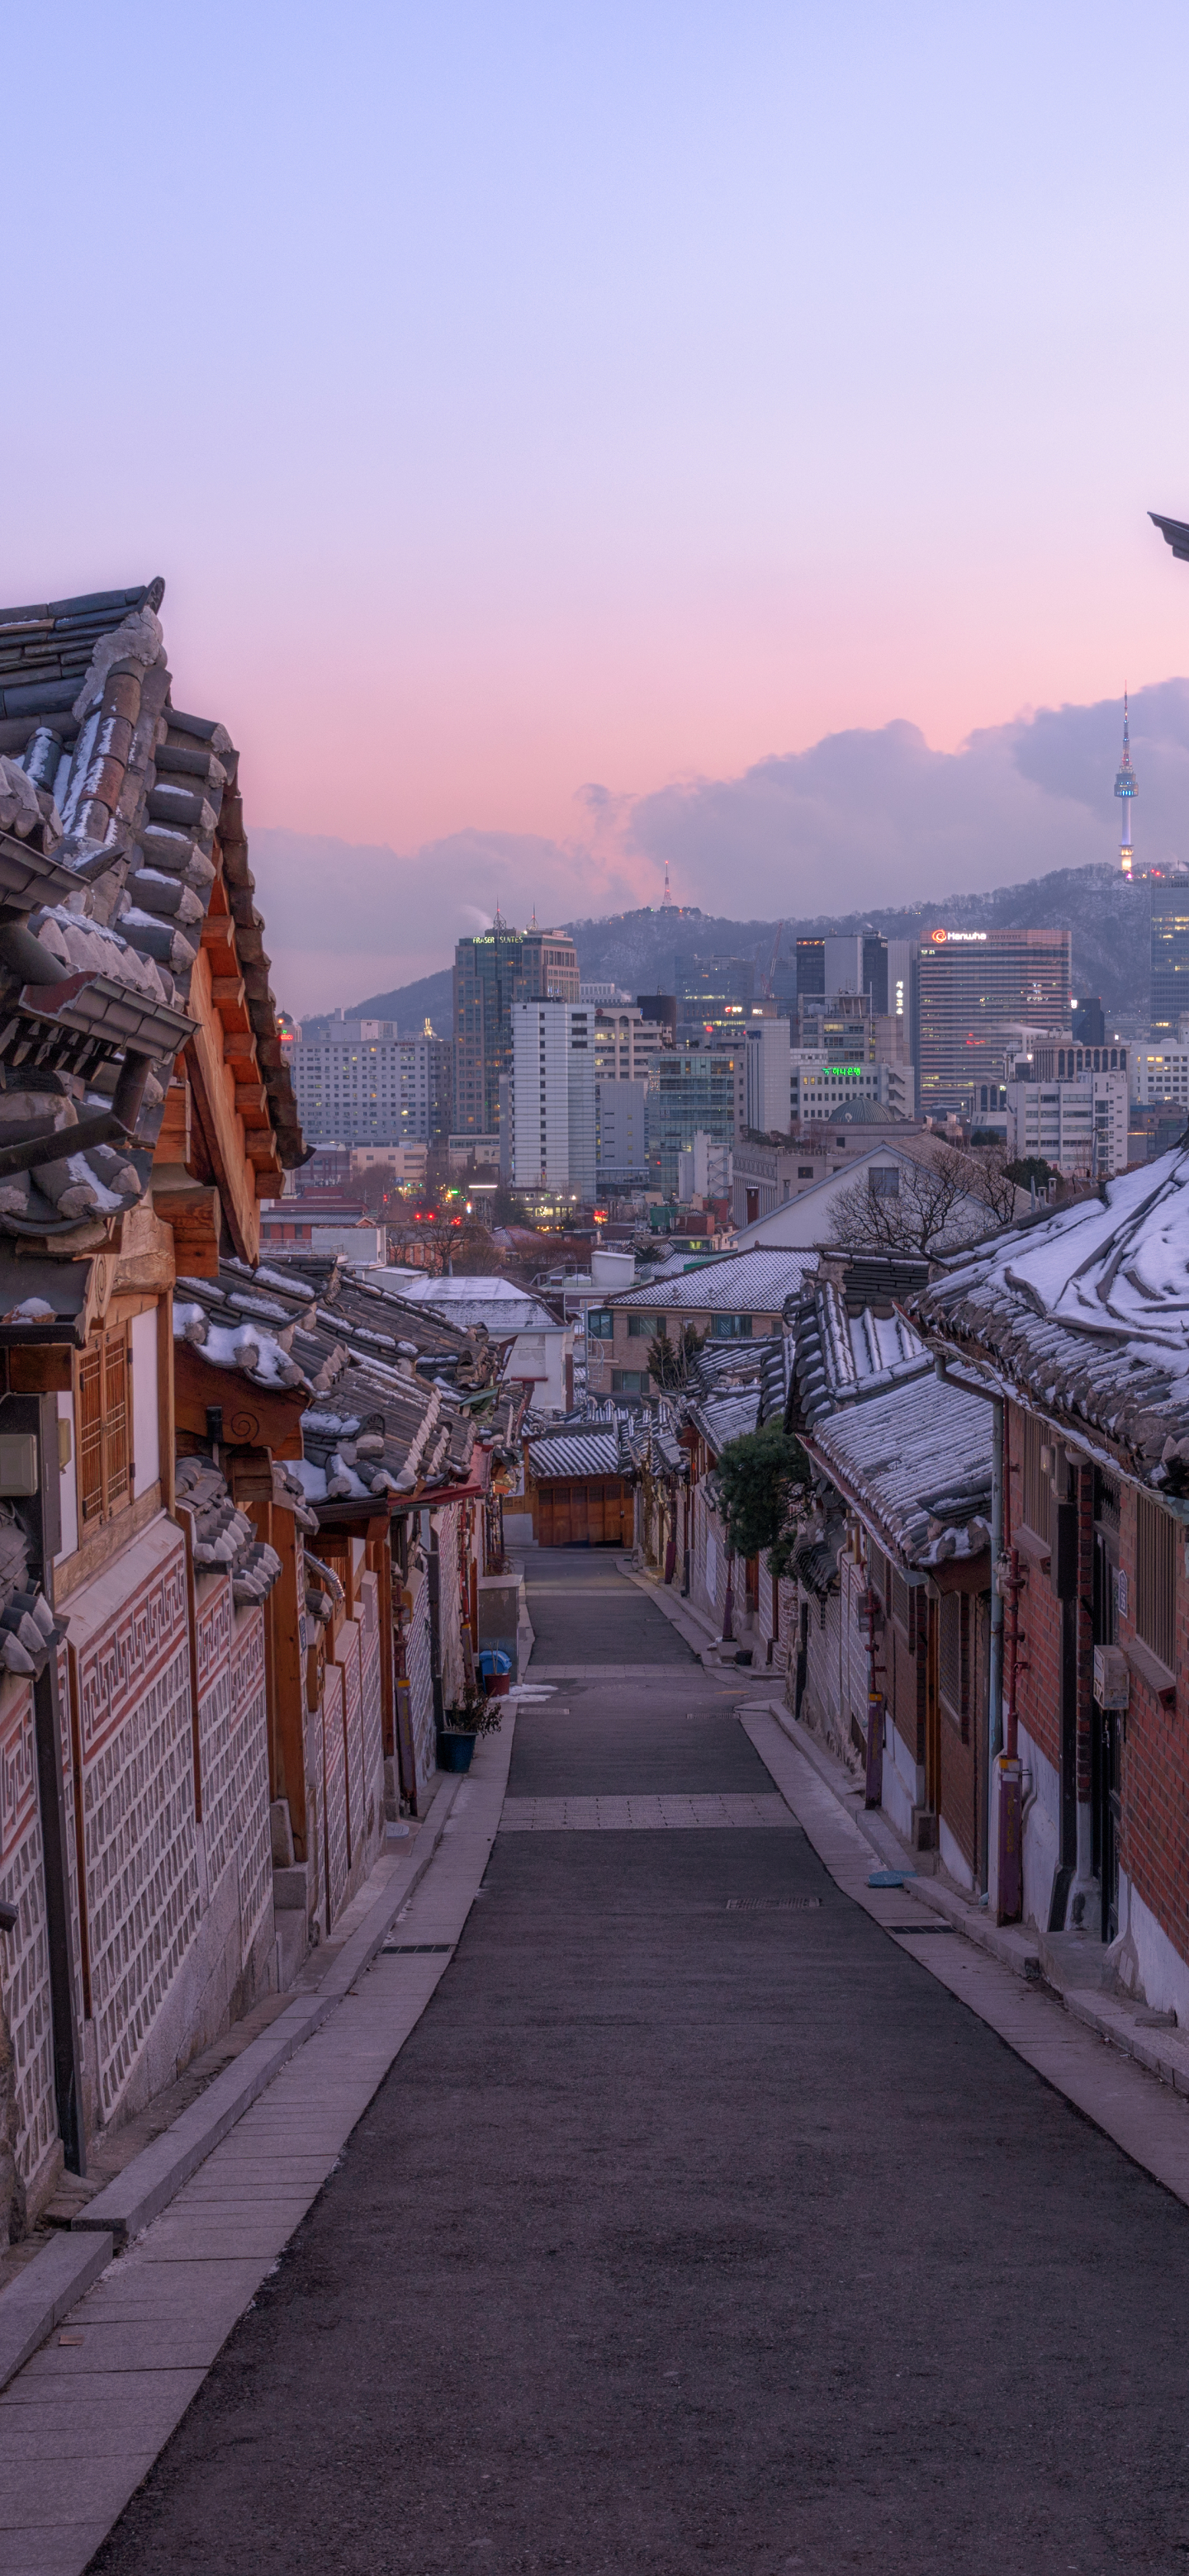 Скачать обои бесплатно Города, Архитектура, Улица, Сеул, Корея, Сделано Человеком, Букчон Ханок картинка на рабочий стол ПК